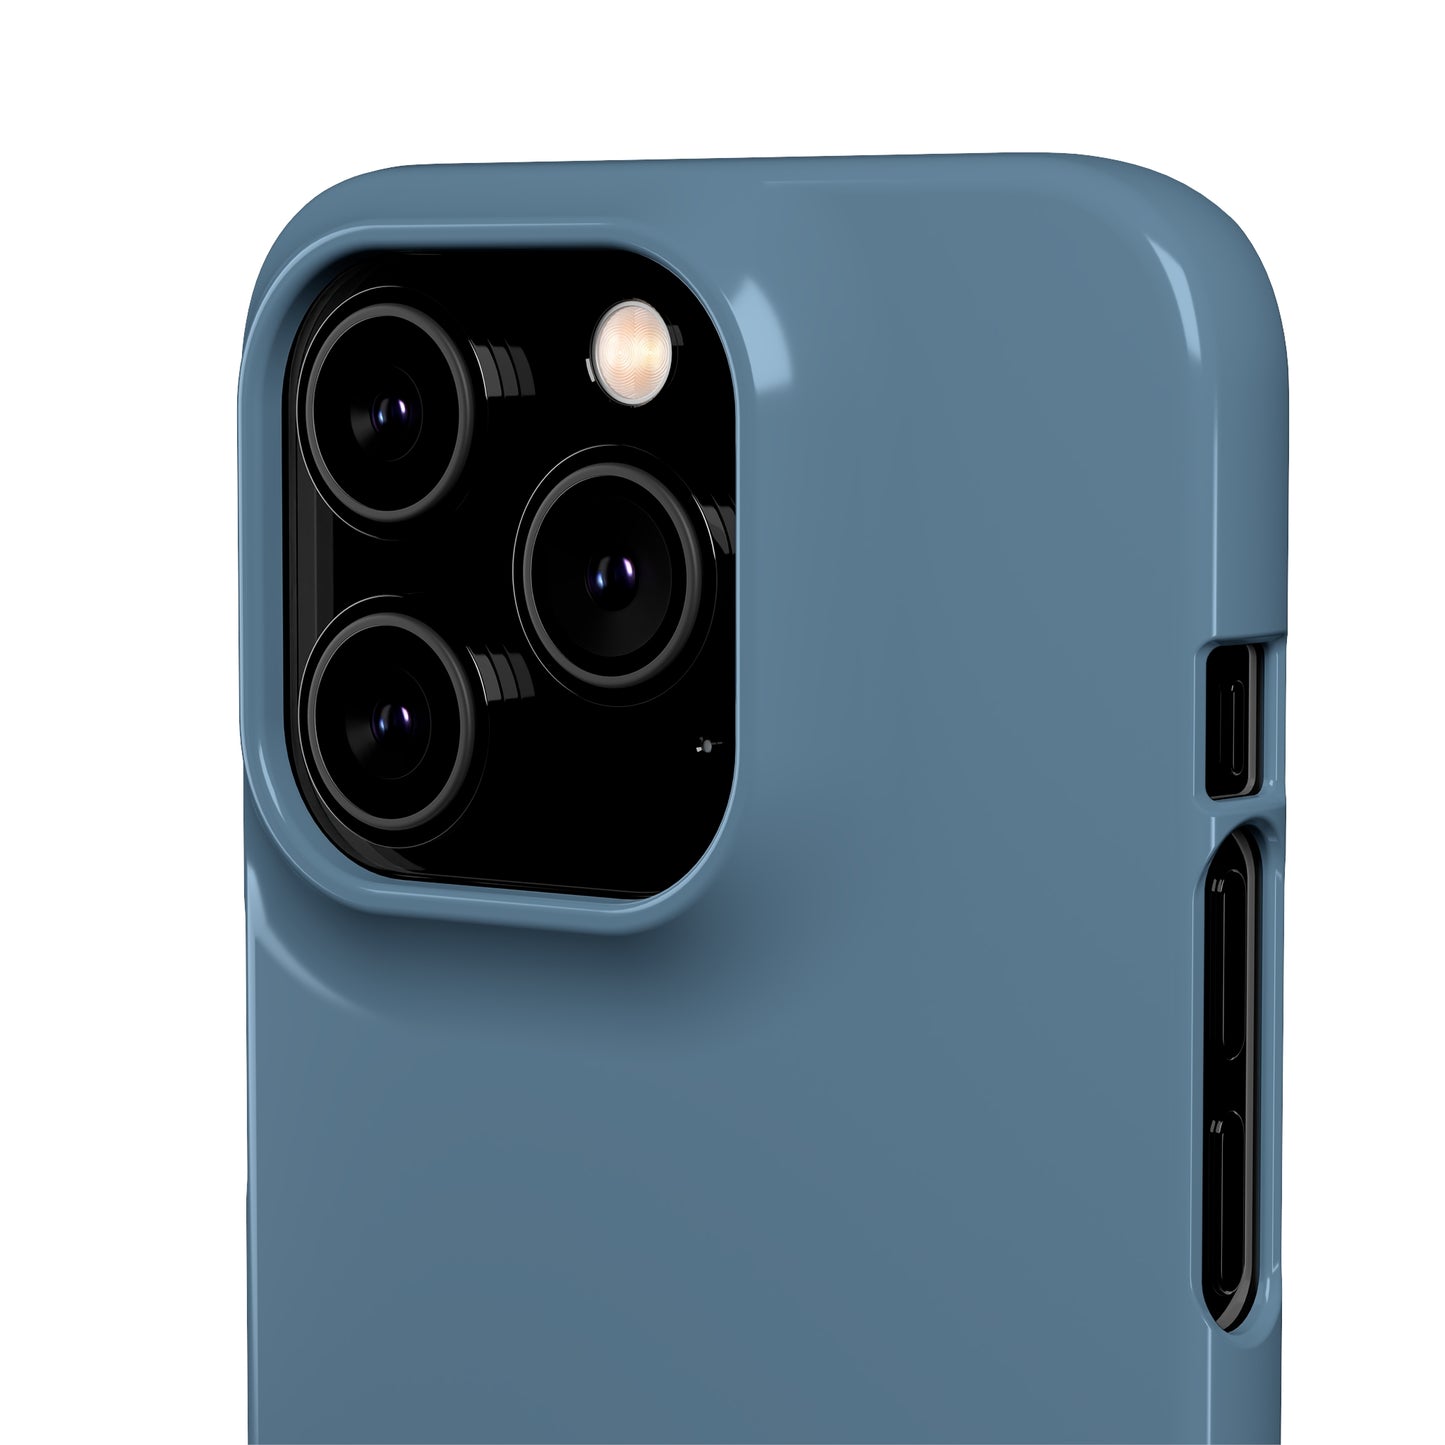 Blue Titanium iPhone 12 Matte Phone Case Accessories Classic Glossy iPhone Cases Matte Phone Cases Samsung Cases